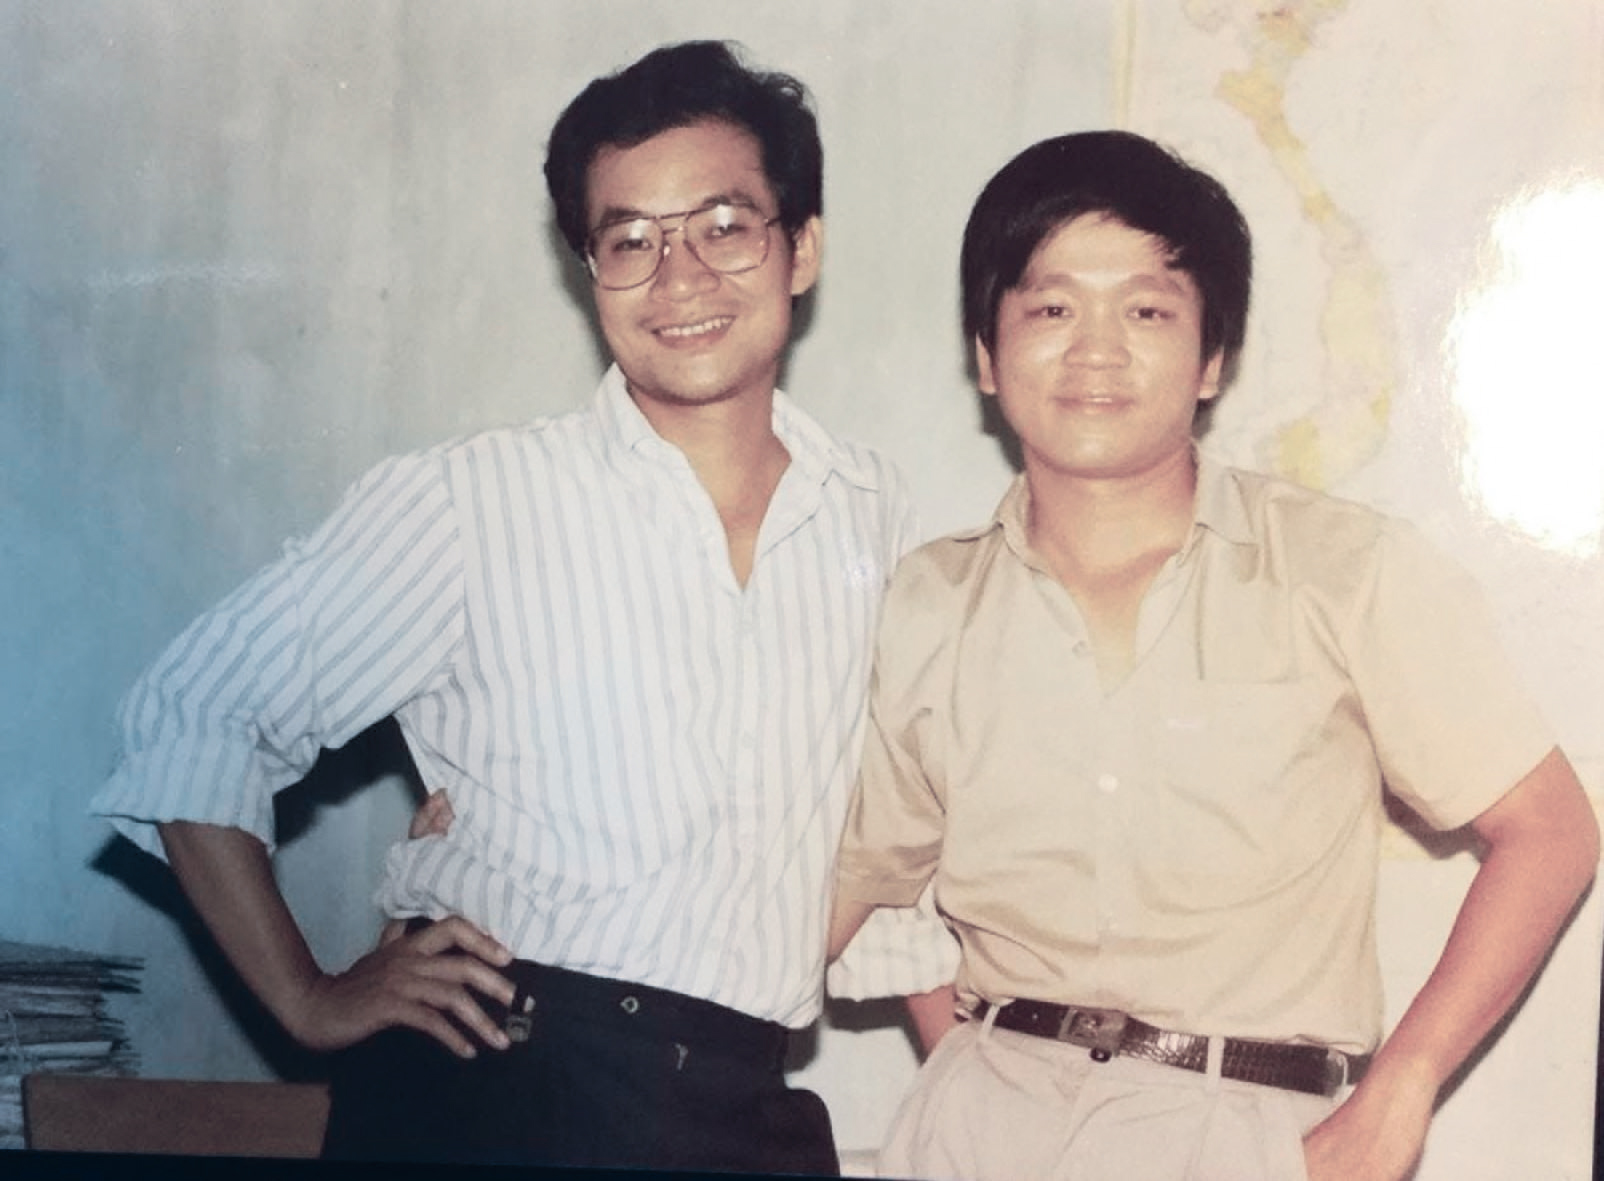 Nhà báo Nguyễn Huy Thắng (người đeo
kính) và nhà báo Nguyễn Trọng Huấn khi
còn công tác tại báo TNTP.